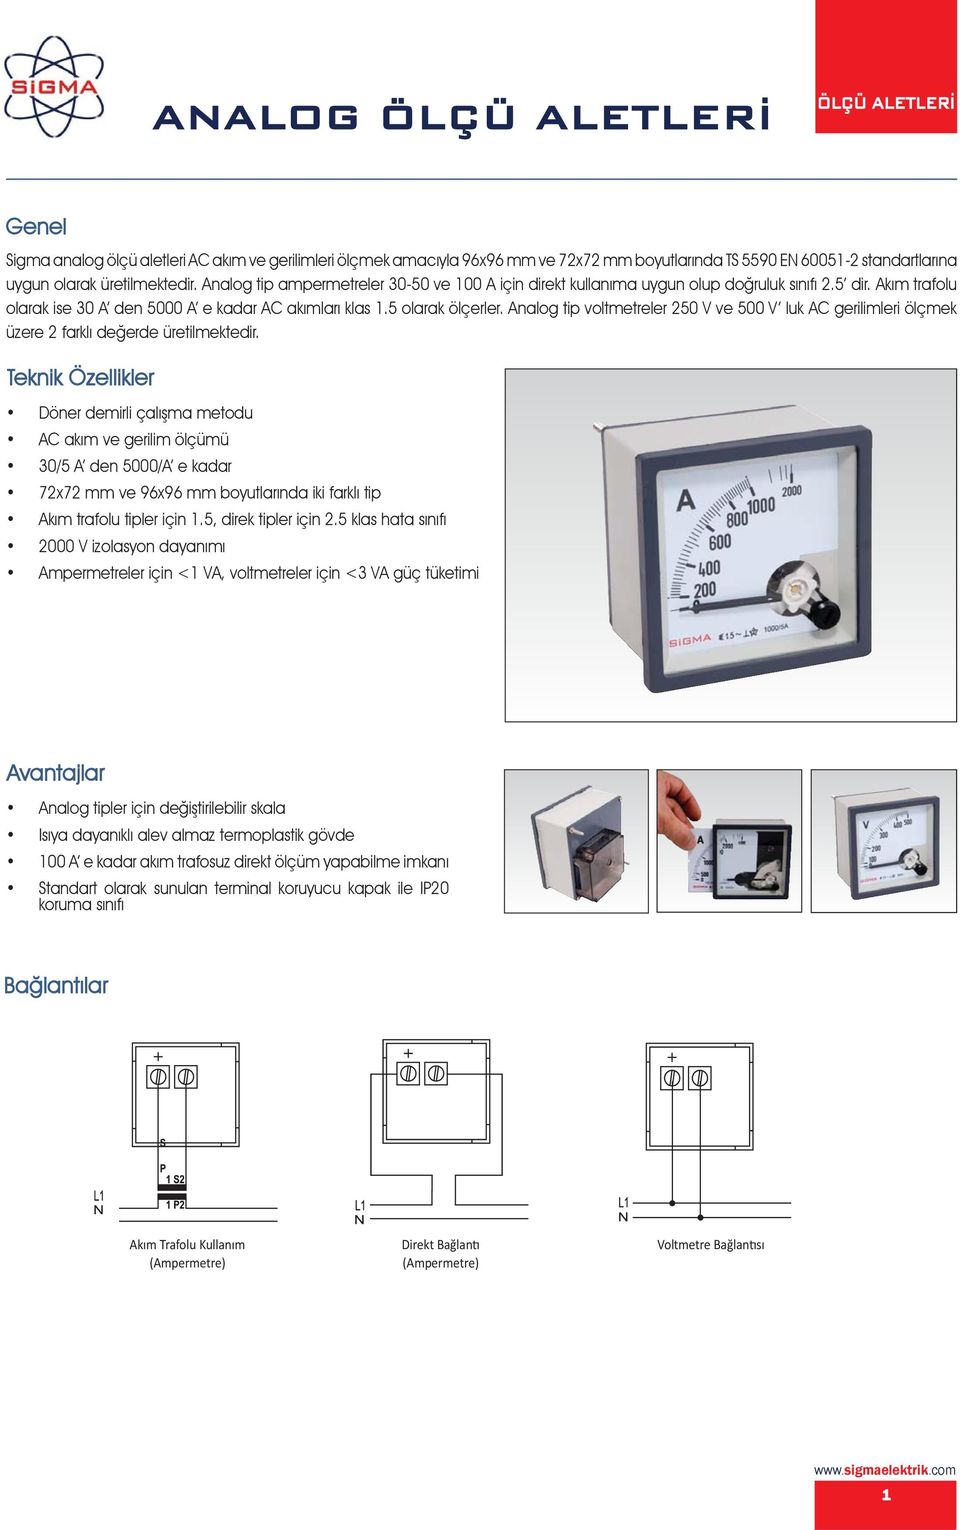 Analog tip voltmetreler 250 V ve 500 V luk AC gerilimleri ölçmek üzere 2 farklı değerde üretilmektedir.